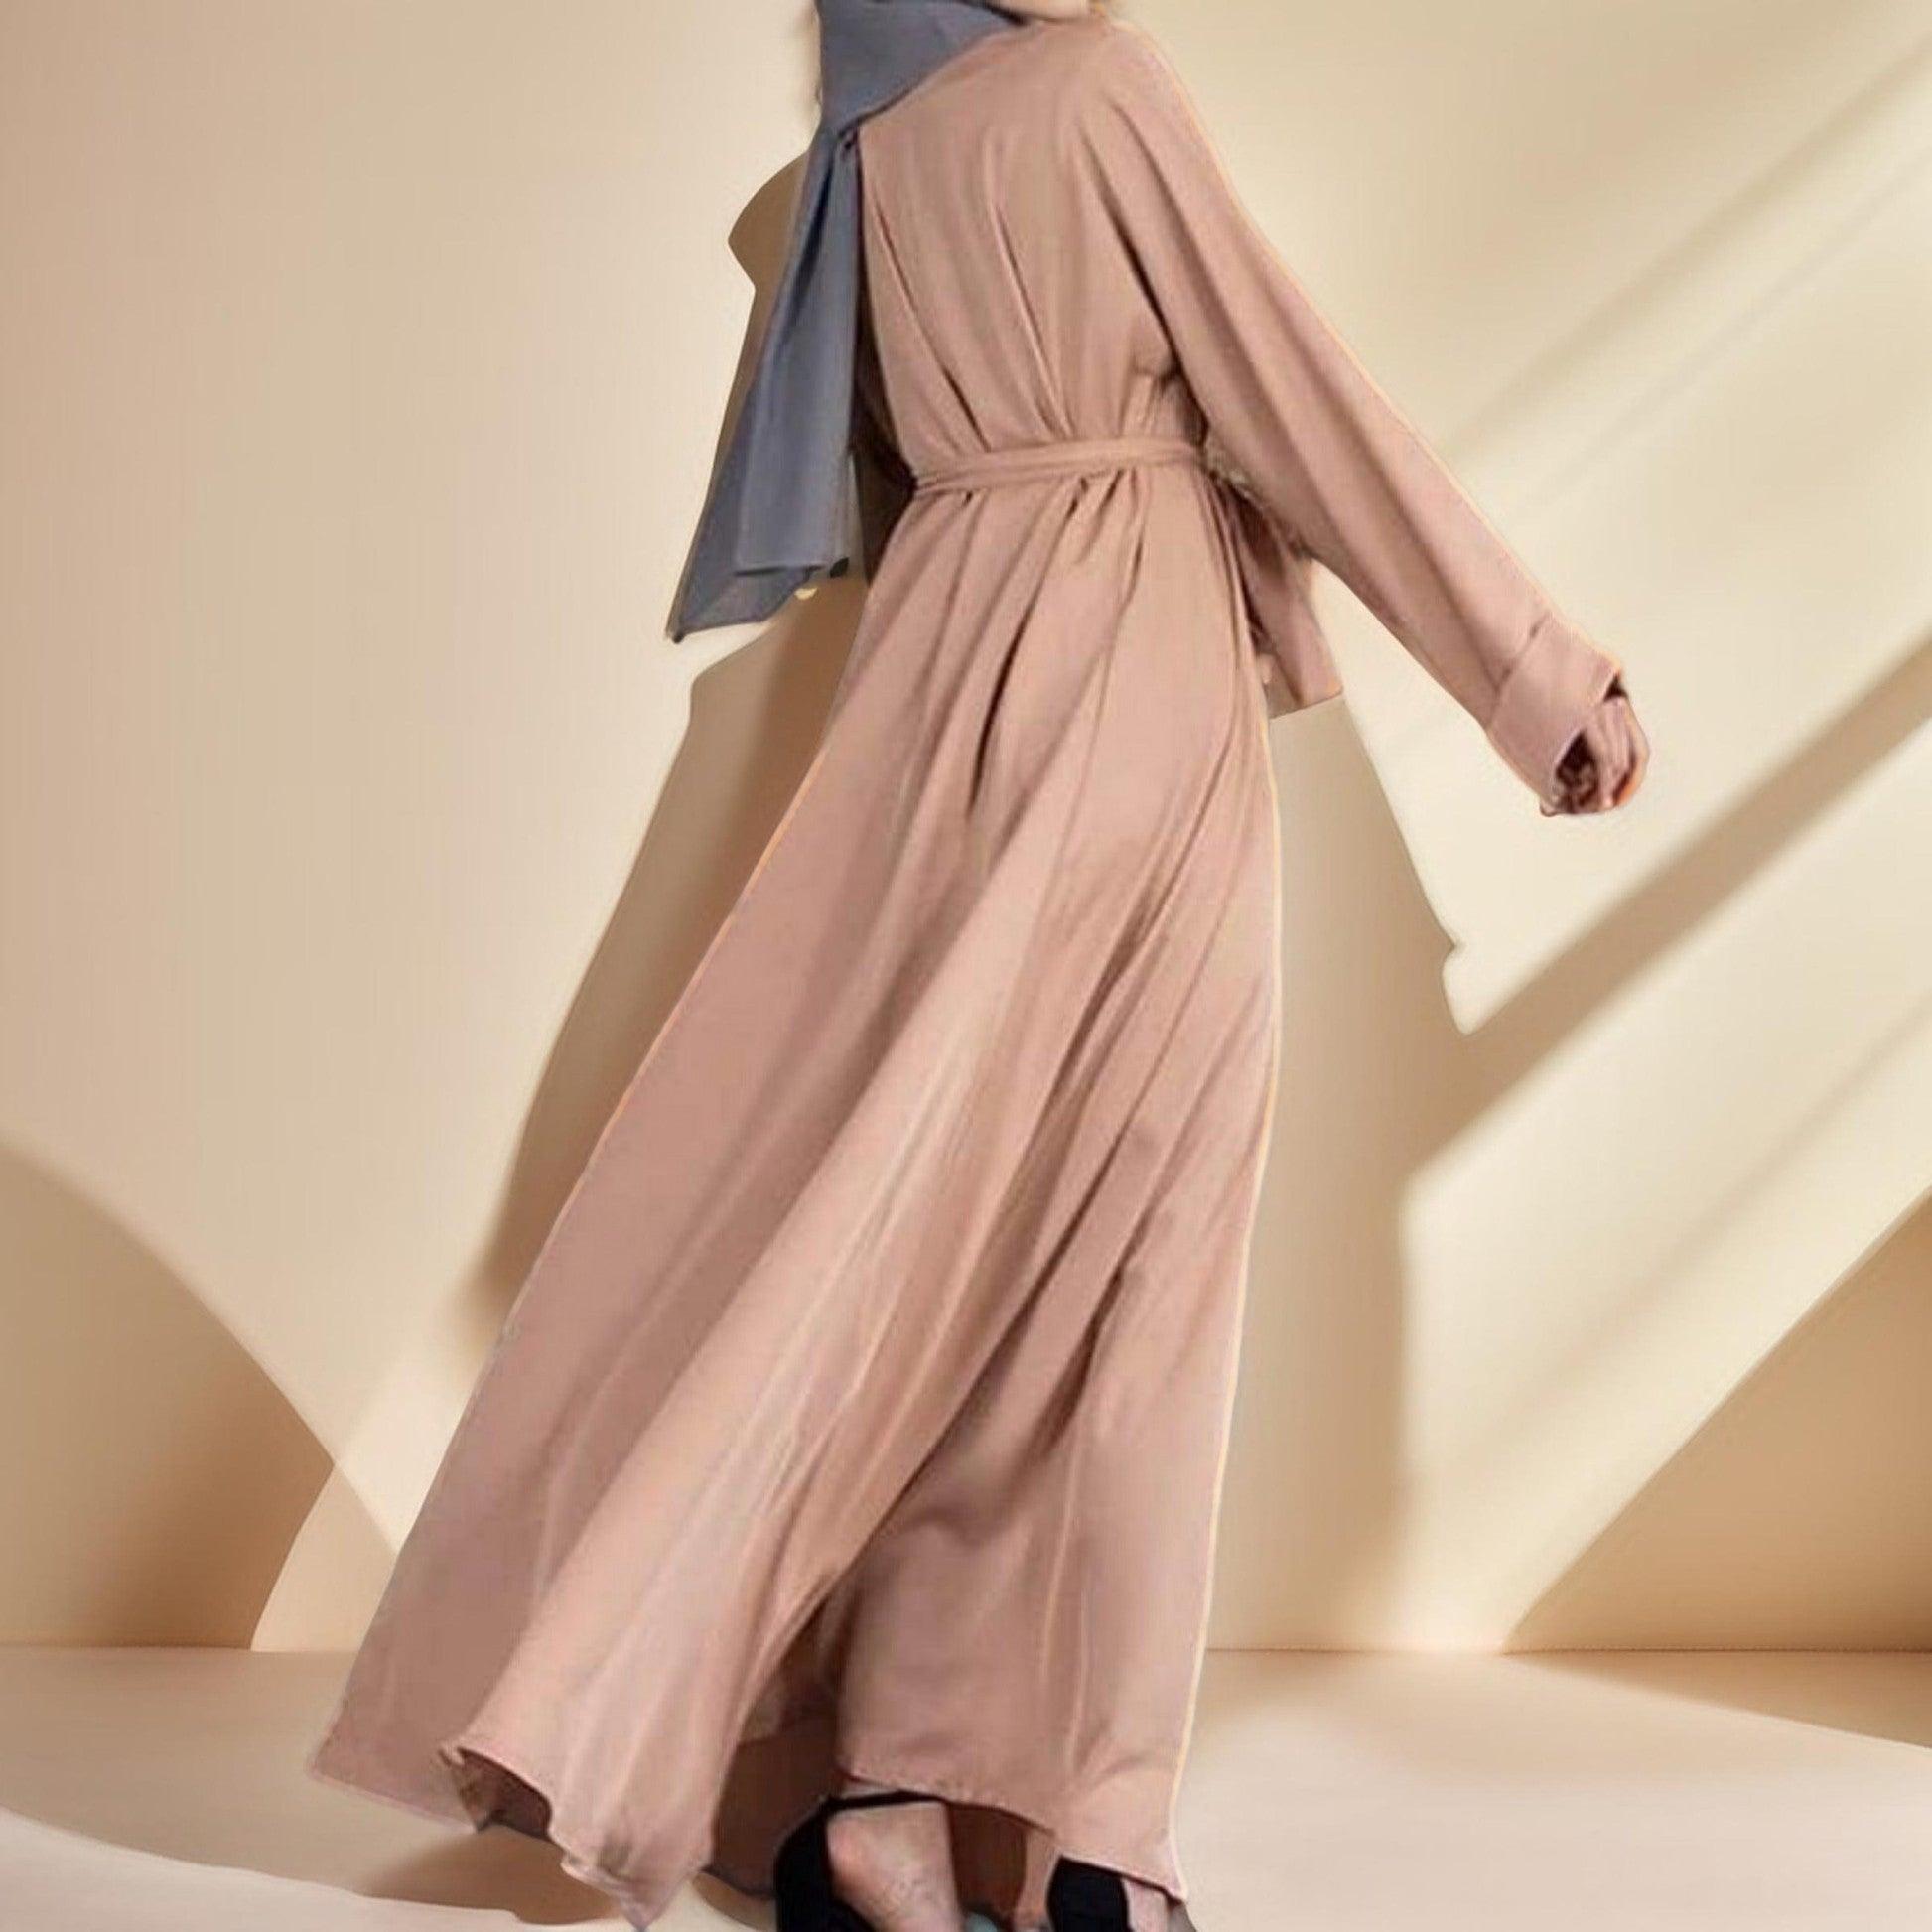 Noora: The Basic Abaya with Kimono Sleeve - Try Modest Limited 